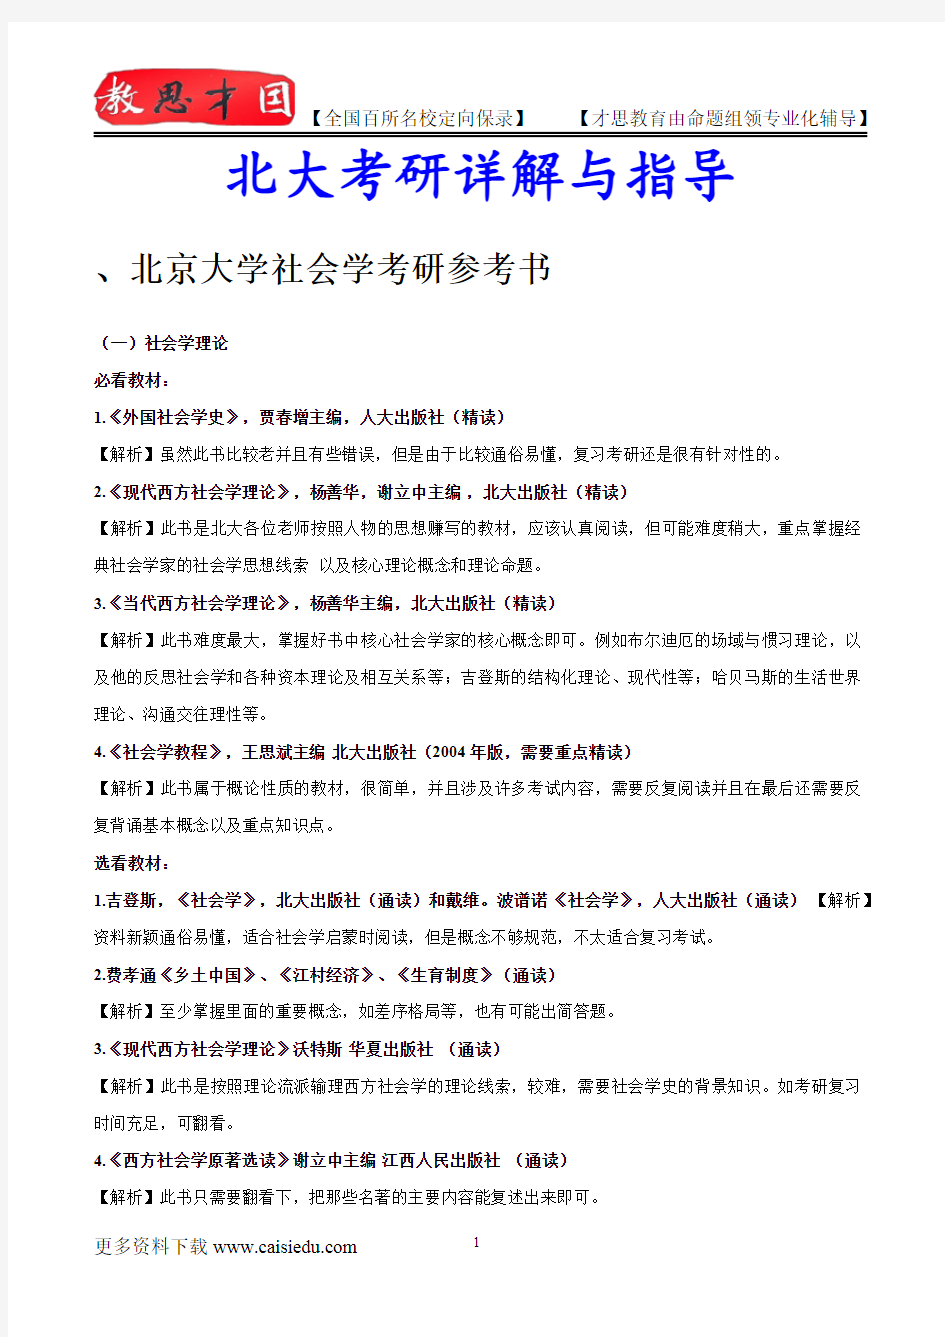 2015年北京大学社会学复试真题,复习经验,考研重点,考研大纲,考研参考书